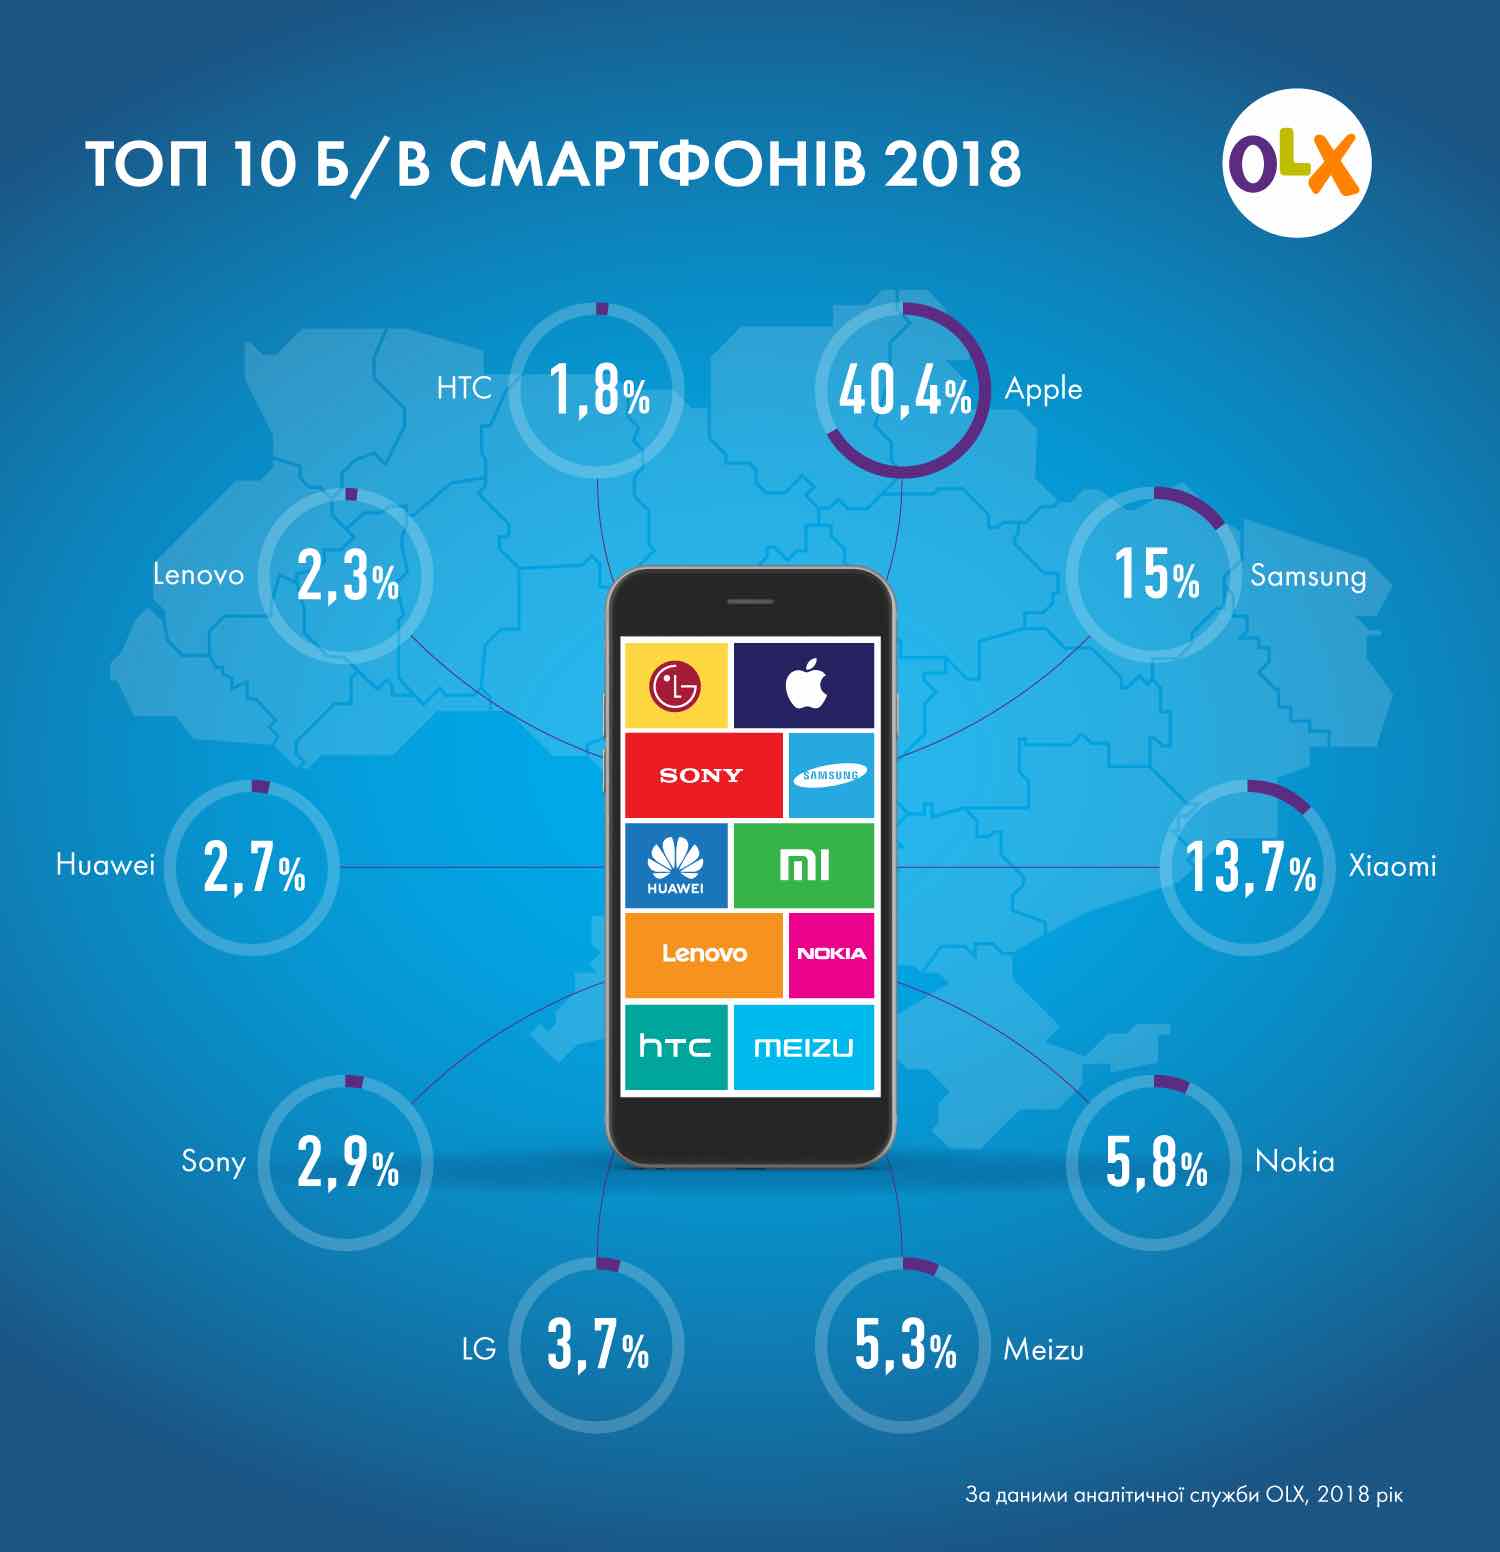 OLX оприлюднив рейтинг смартфонів на б/в ринку